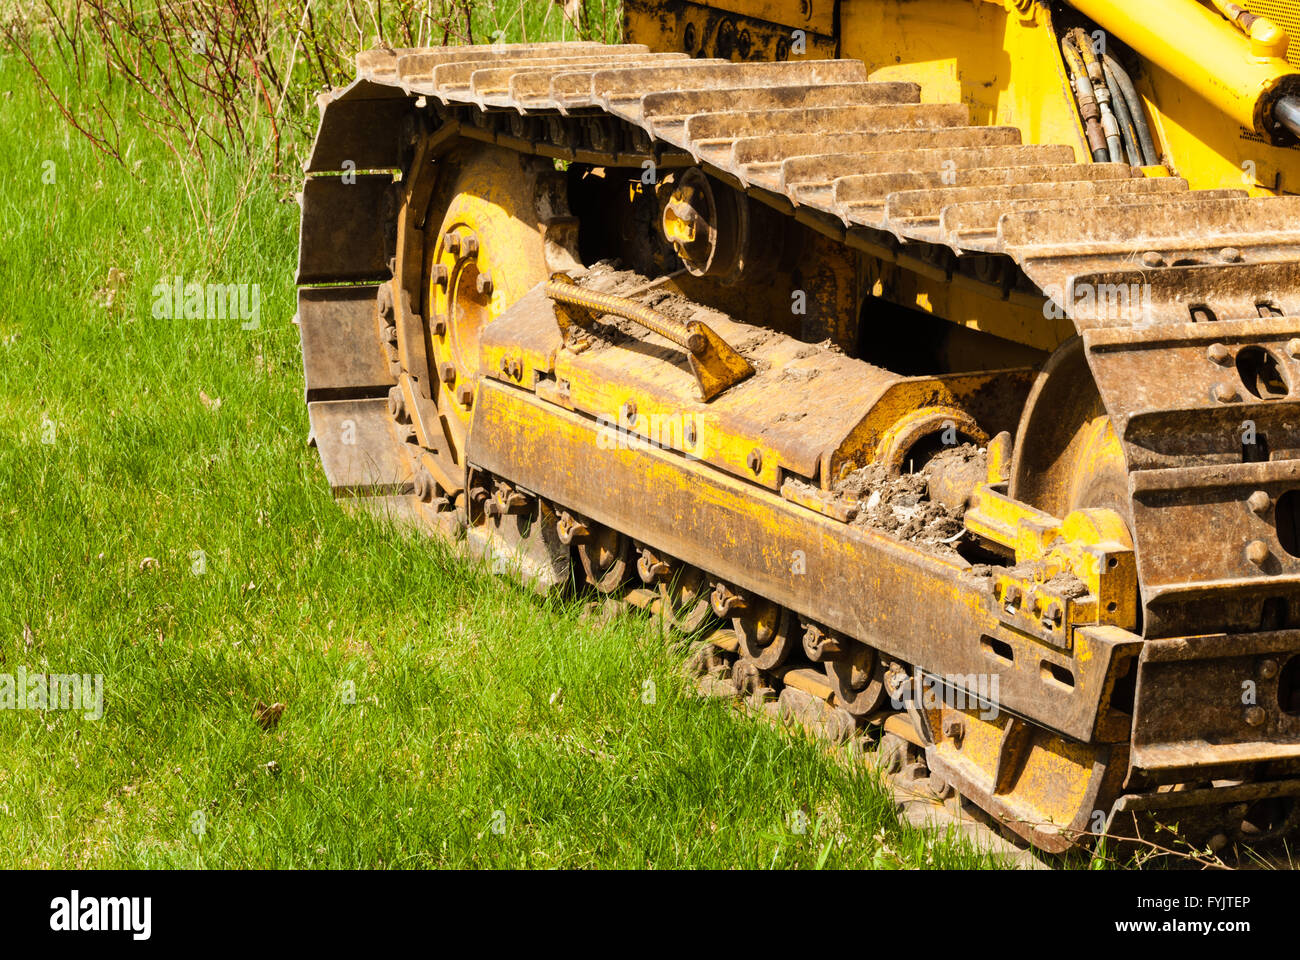 Terreni fangosi cingoli e pedate su un bulldozer parcheggiato su erba verde. Foto Stock